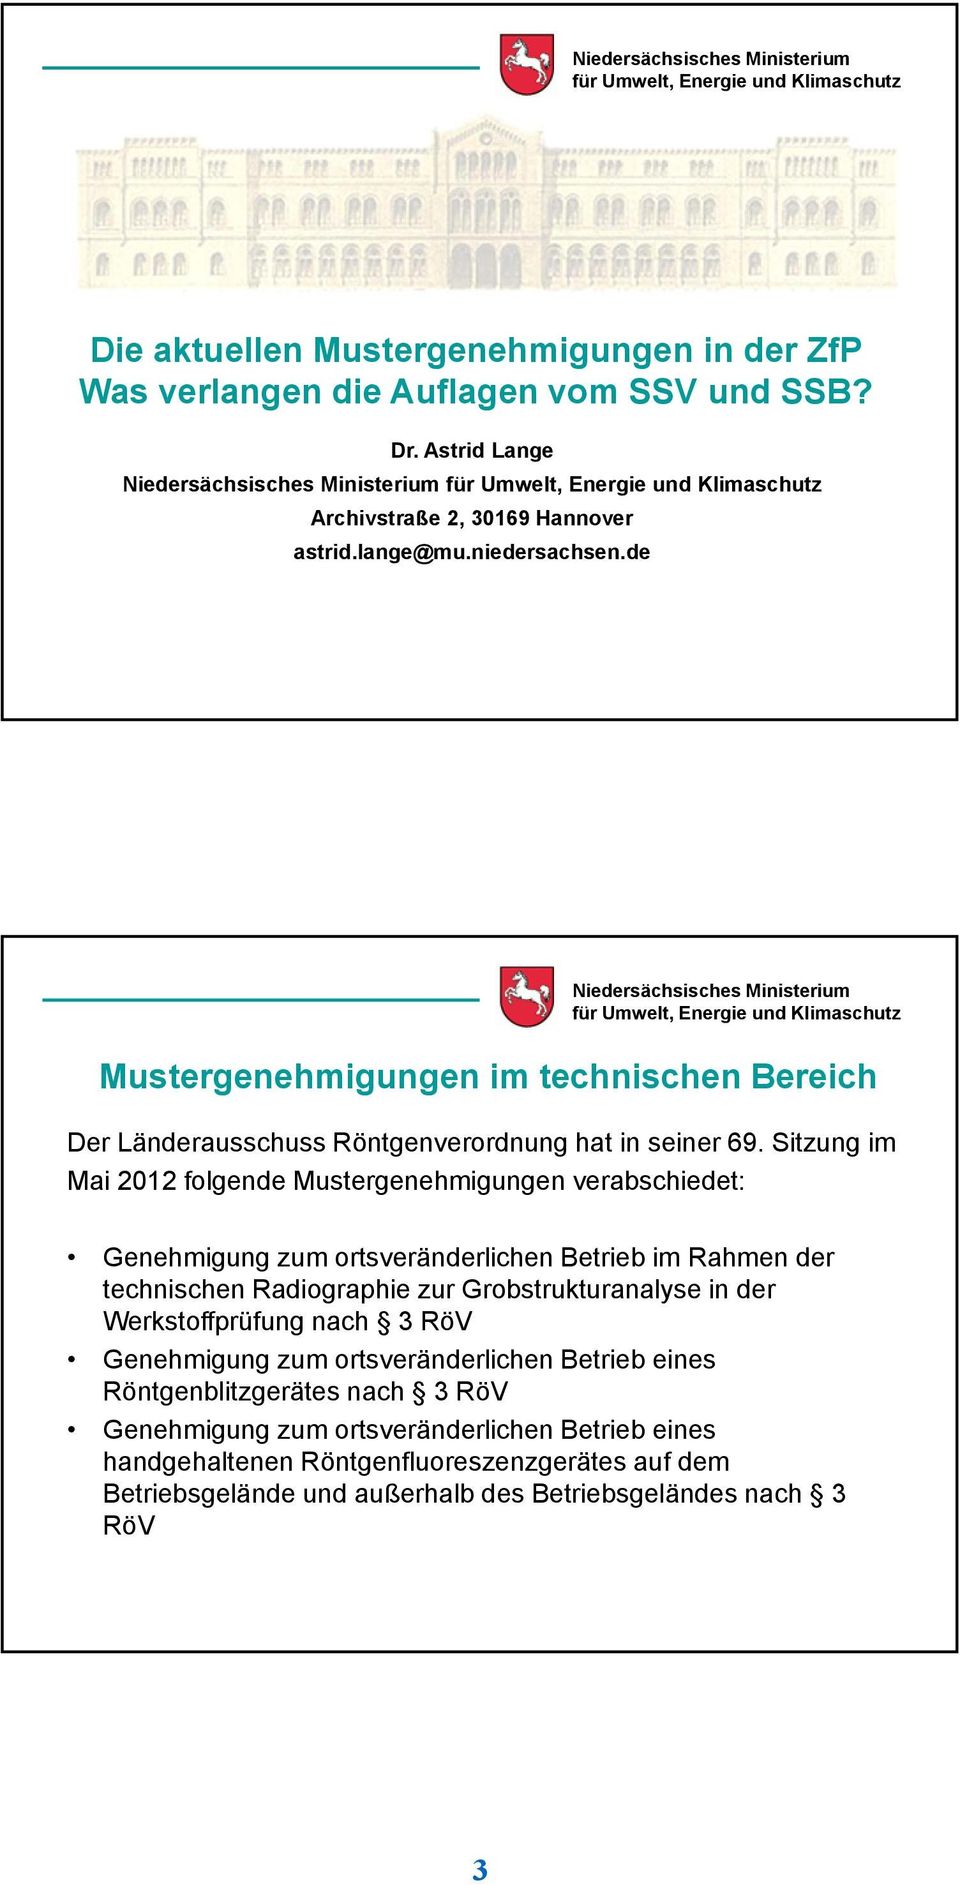 Sitzung im Mai 2012 folgende Mustergenehmigungen verabschiedet: Genehmigung zum ortsveränderlichen Betrieb im Rahmen der technischen Radiographie zur Grobstrukturanalyse in der